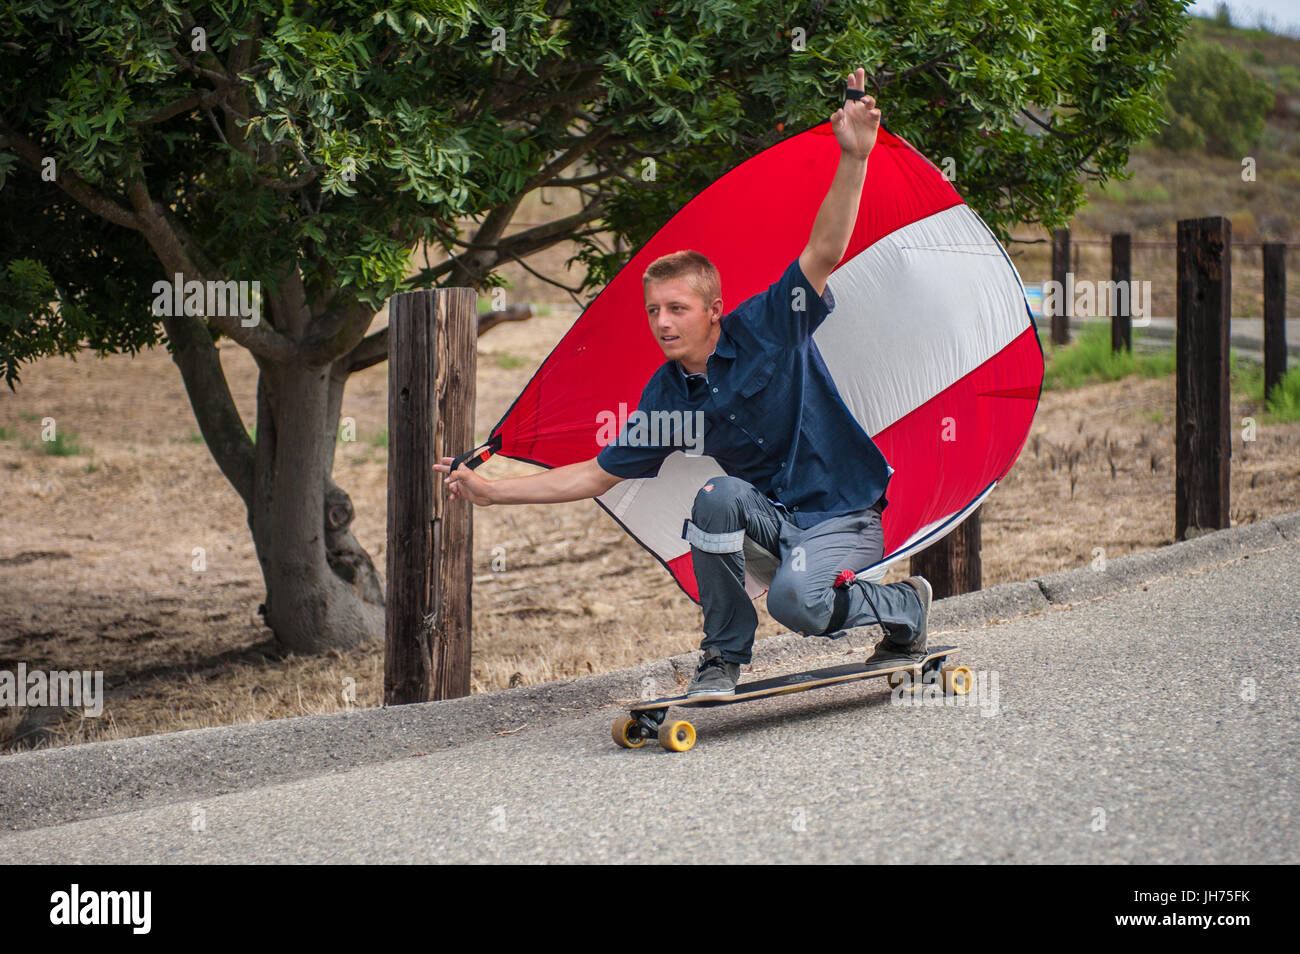 Fallschirm-downhill-Skateboarder hat Segel voll Wind, wie er duckt sich in  goofy Fuß Haltung Stockfotografie - Alamy